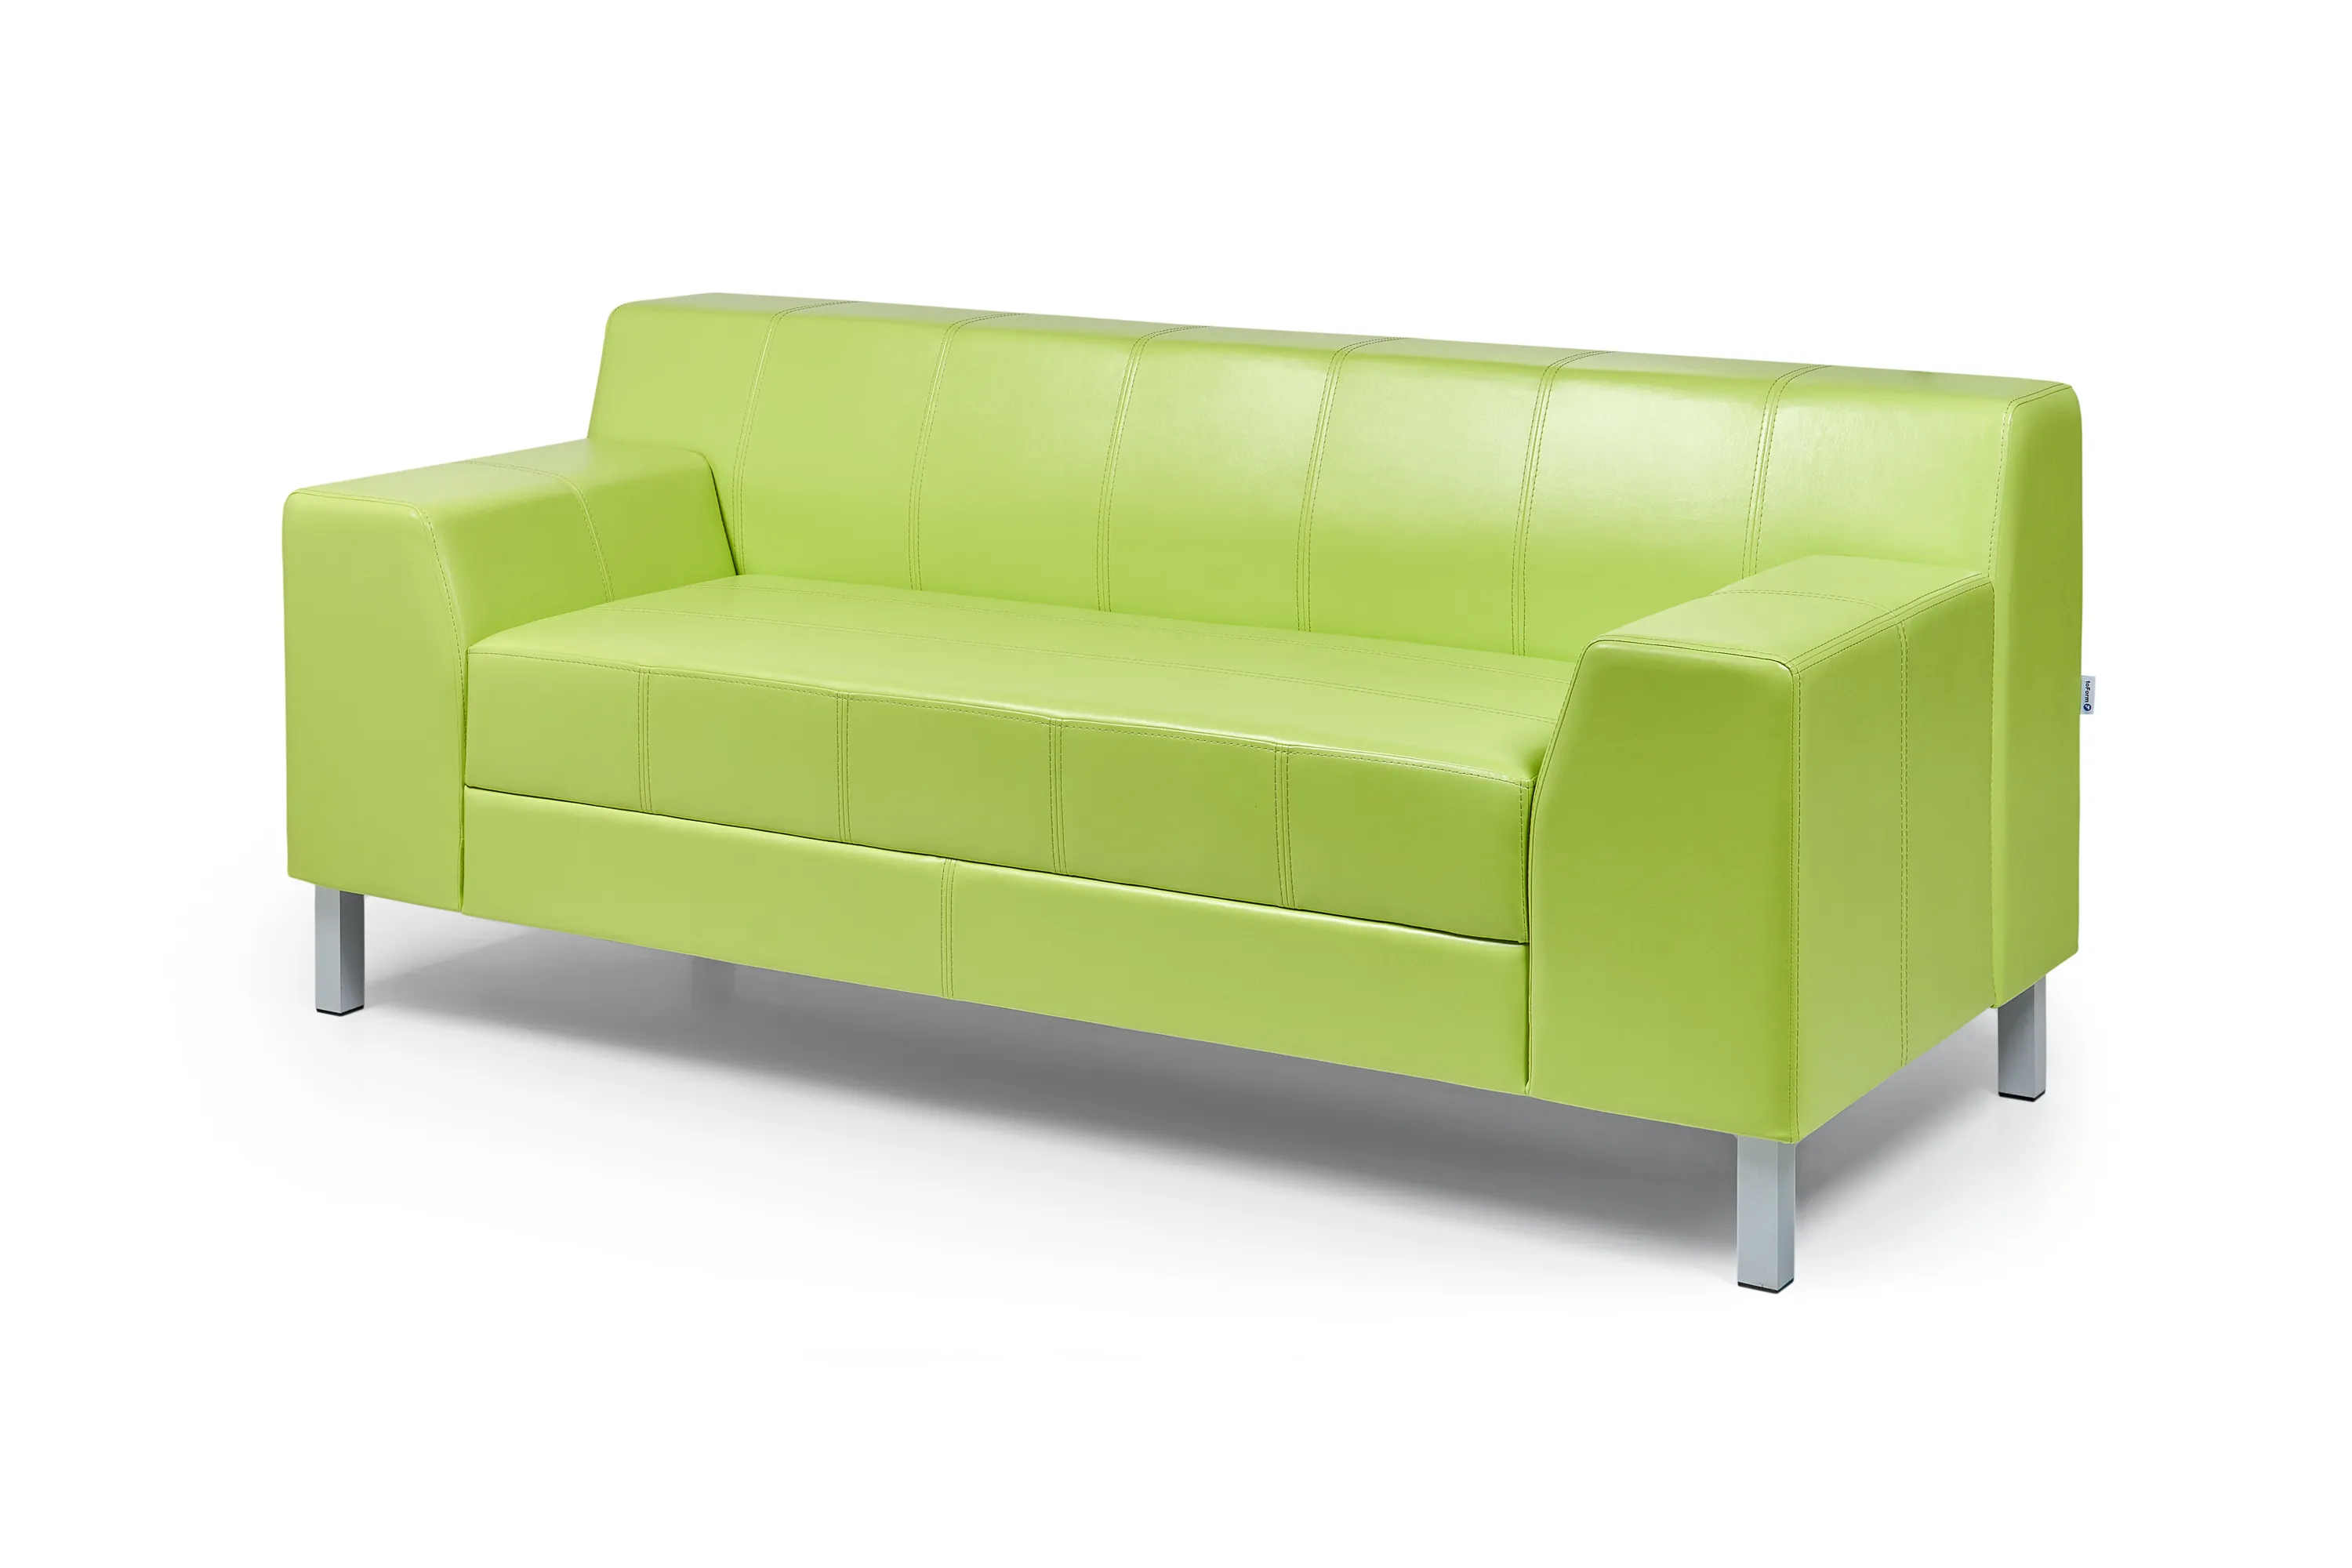 Модульный офисный диван toForm М9L Easy style